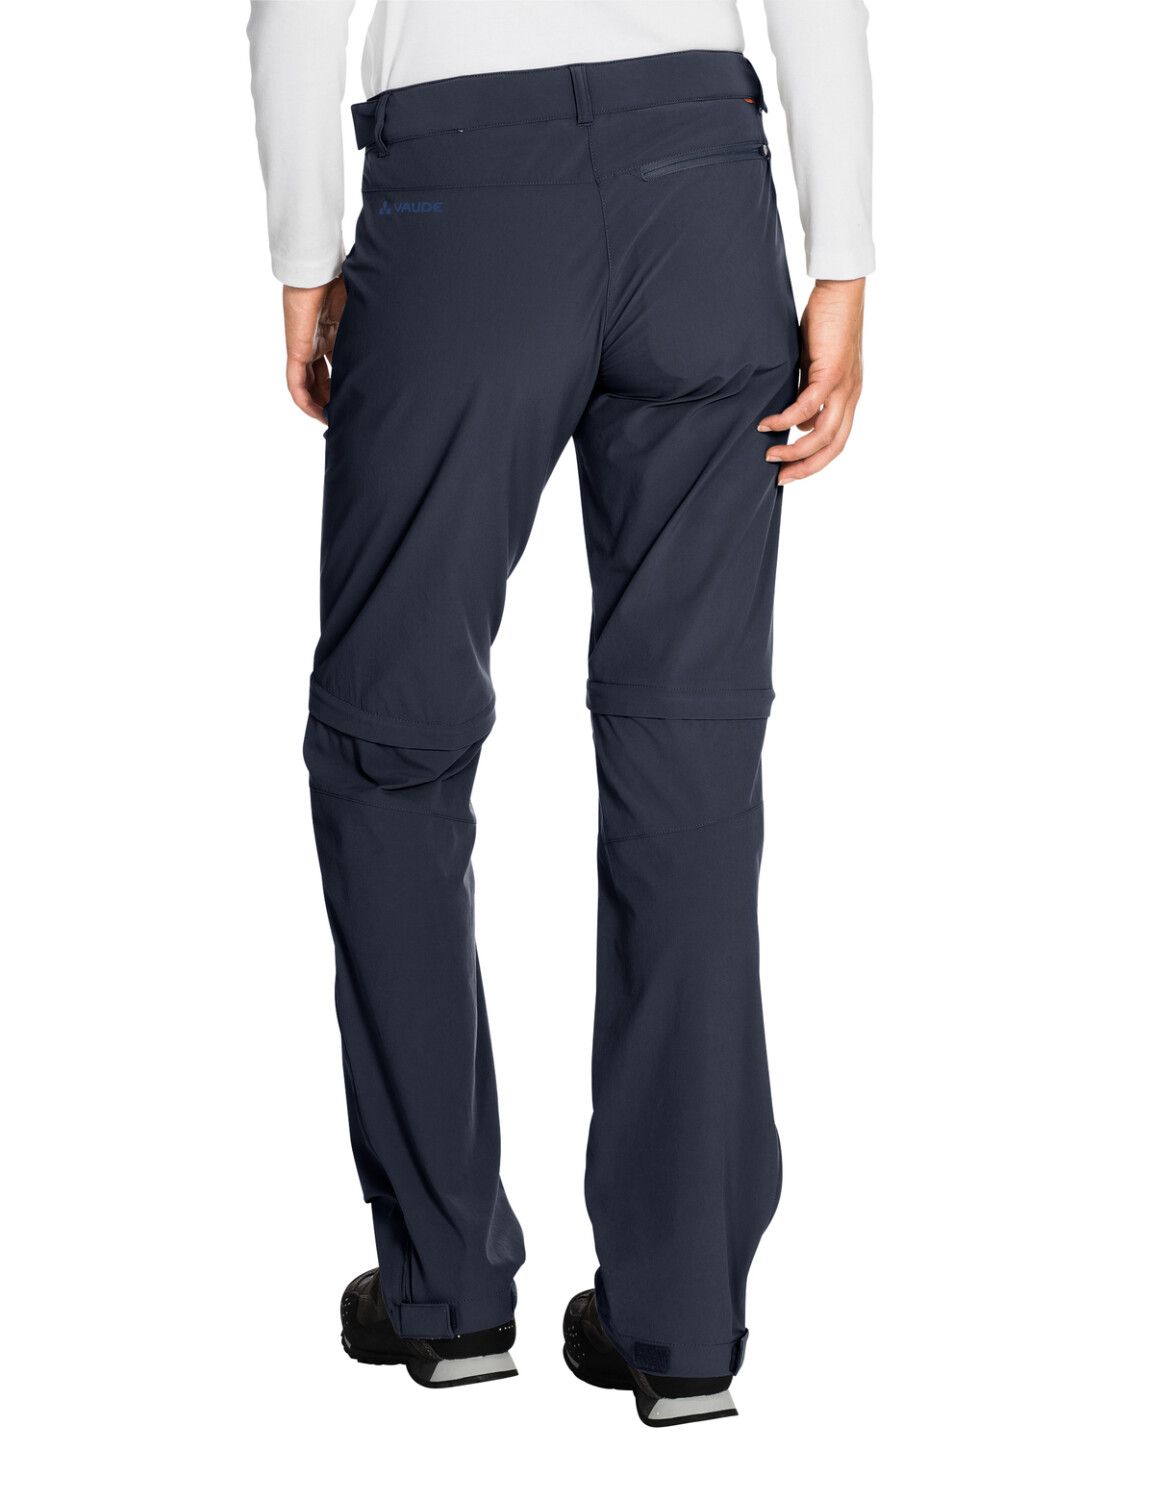 VAUDE Women's Farley Stretch ZO T-Zip Pants (Bild 48)